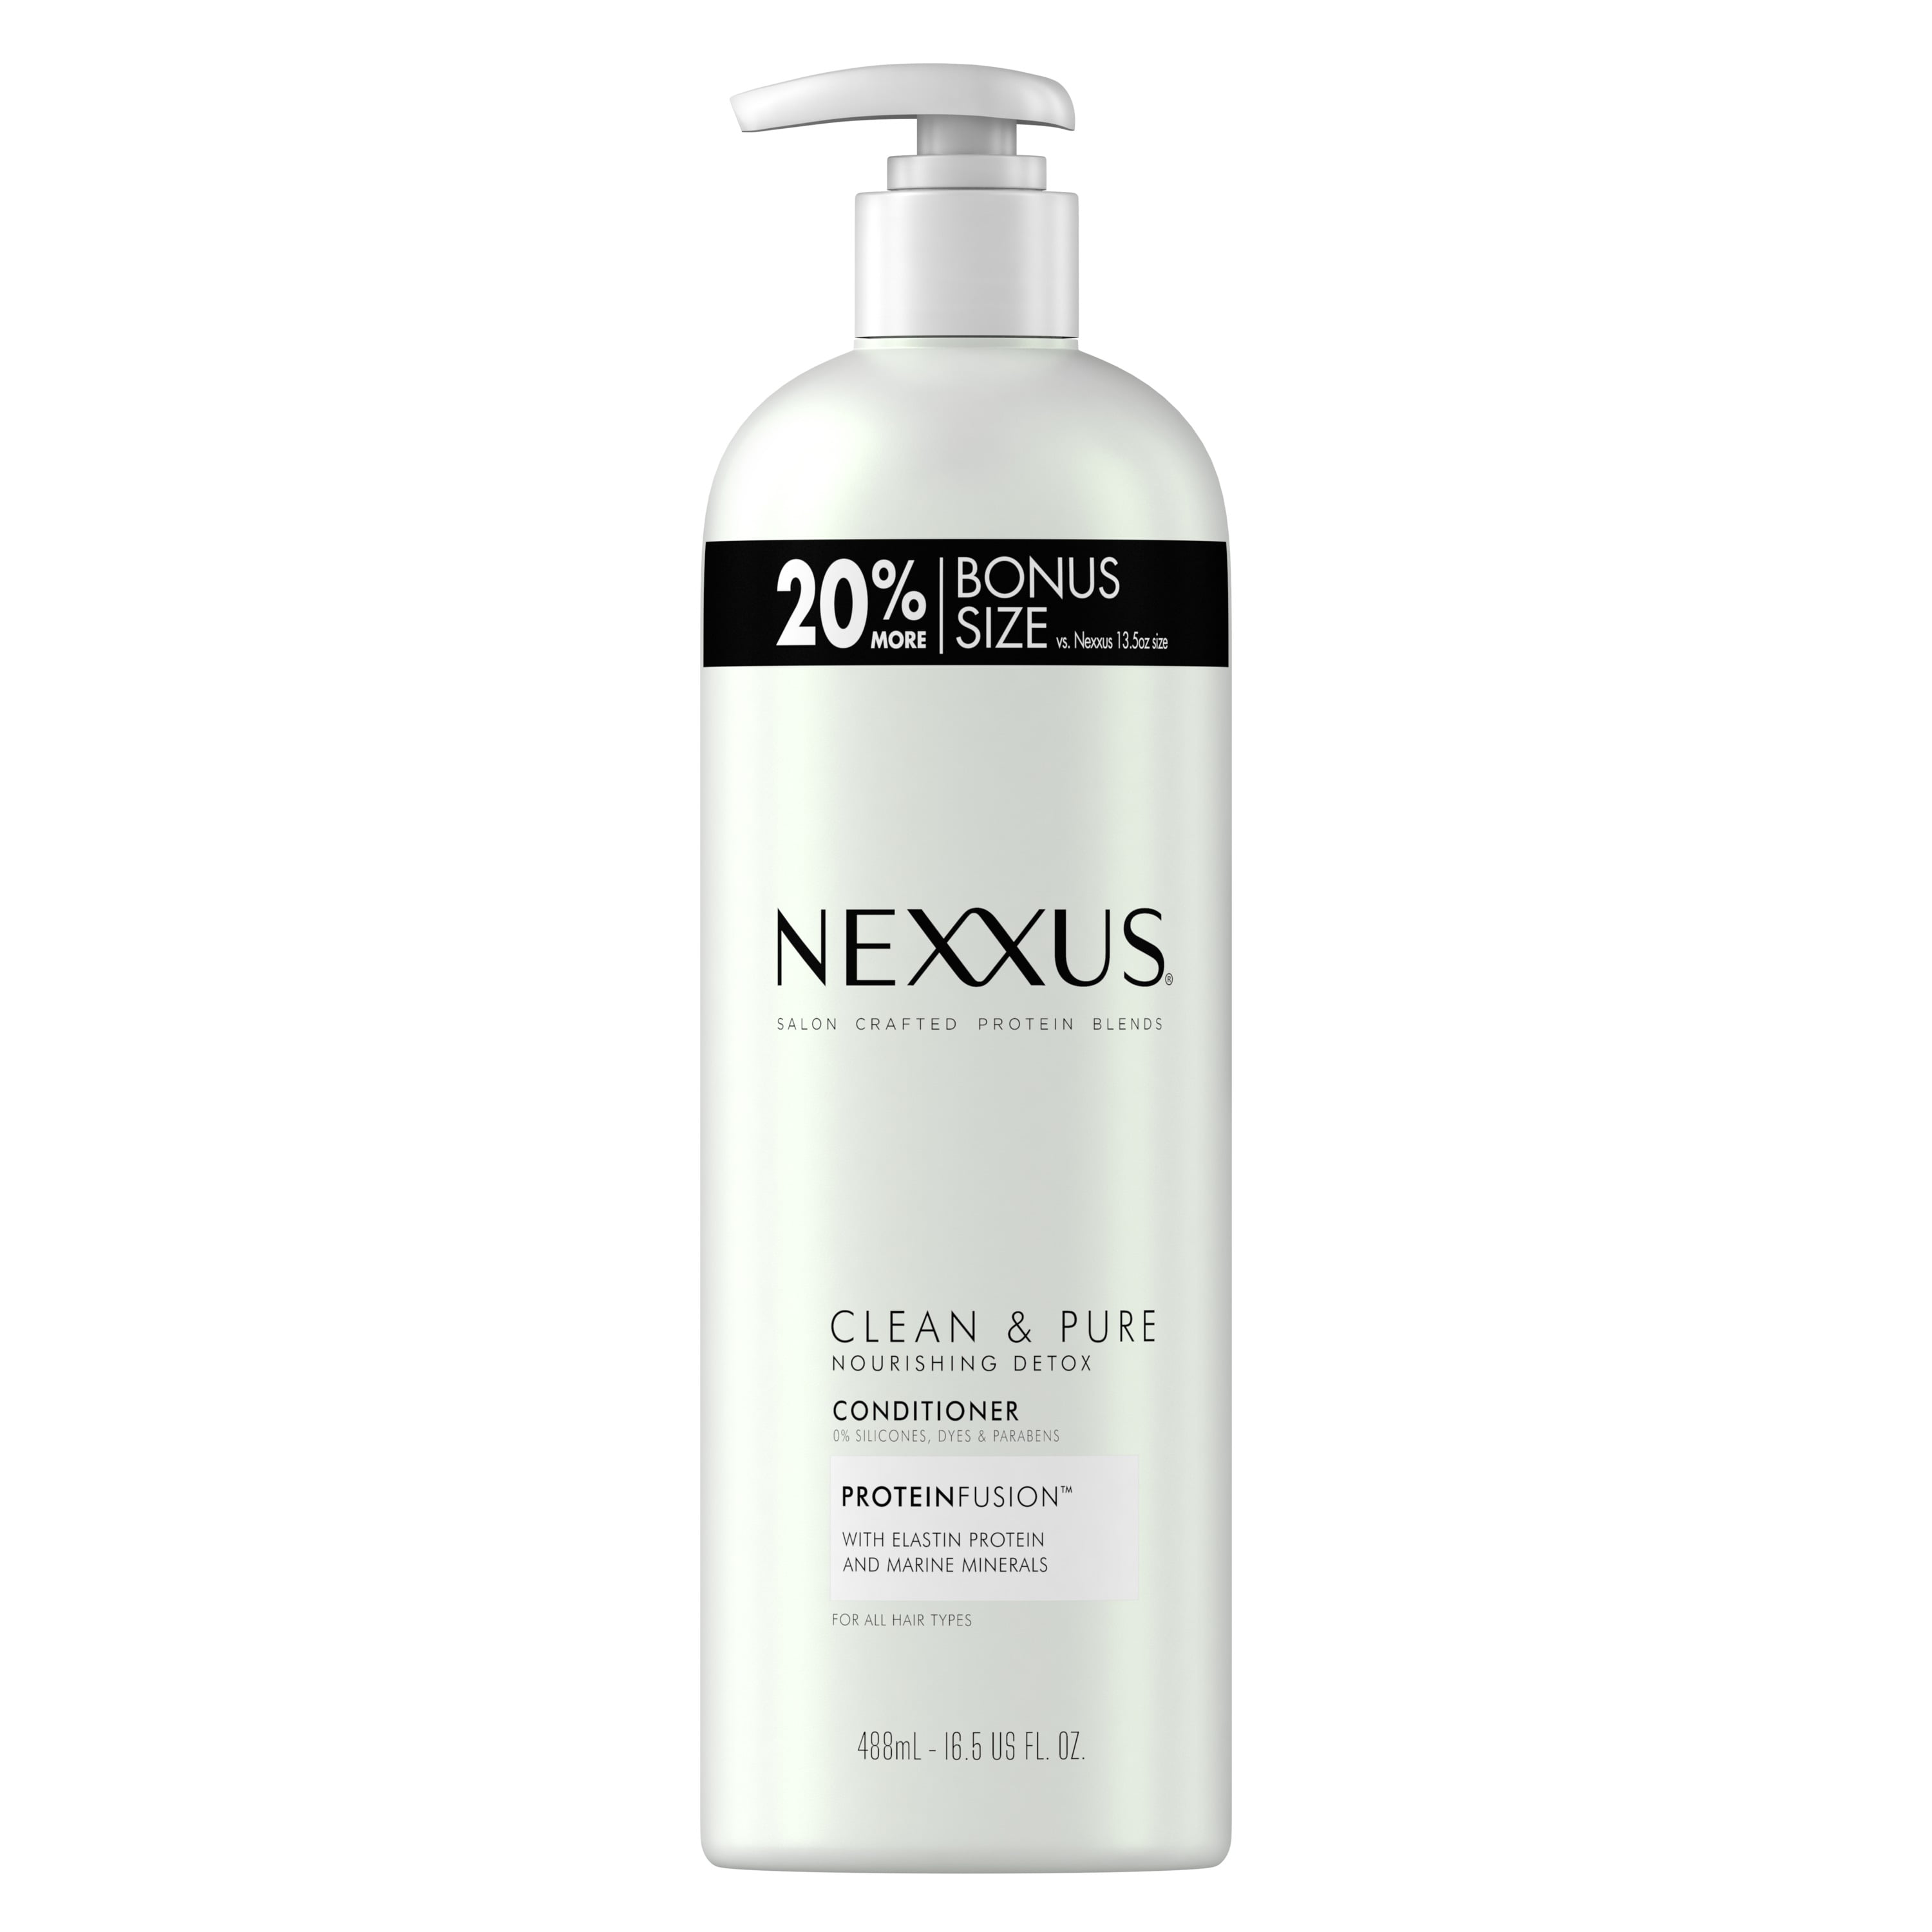 nexxus reviews